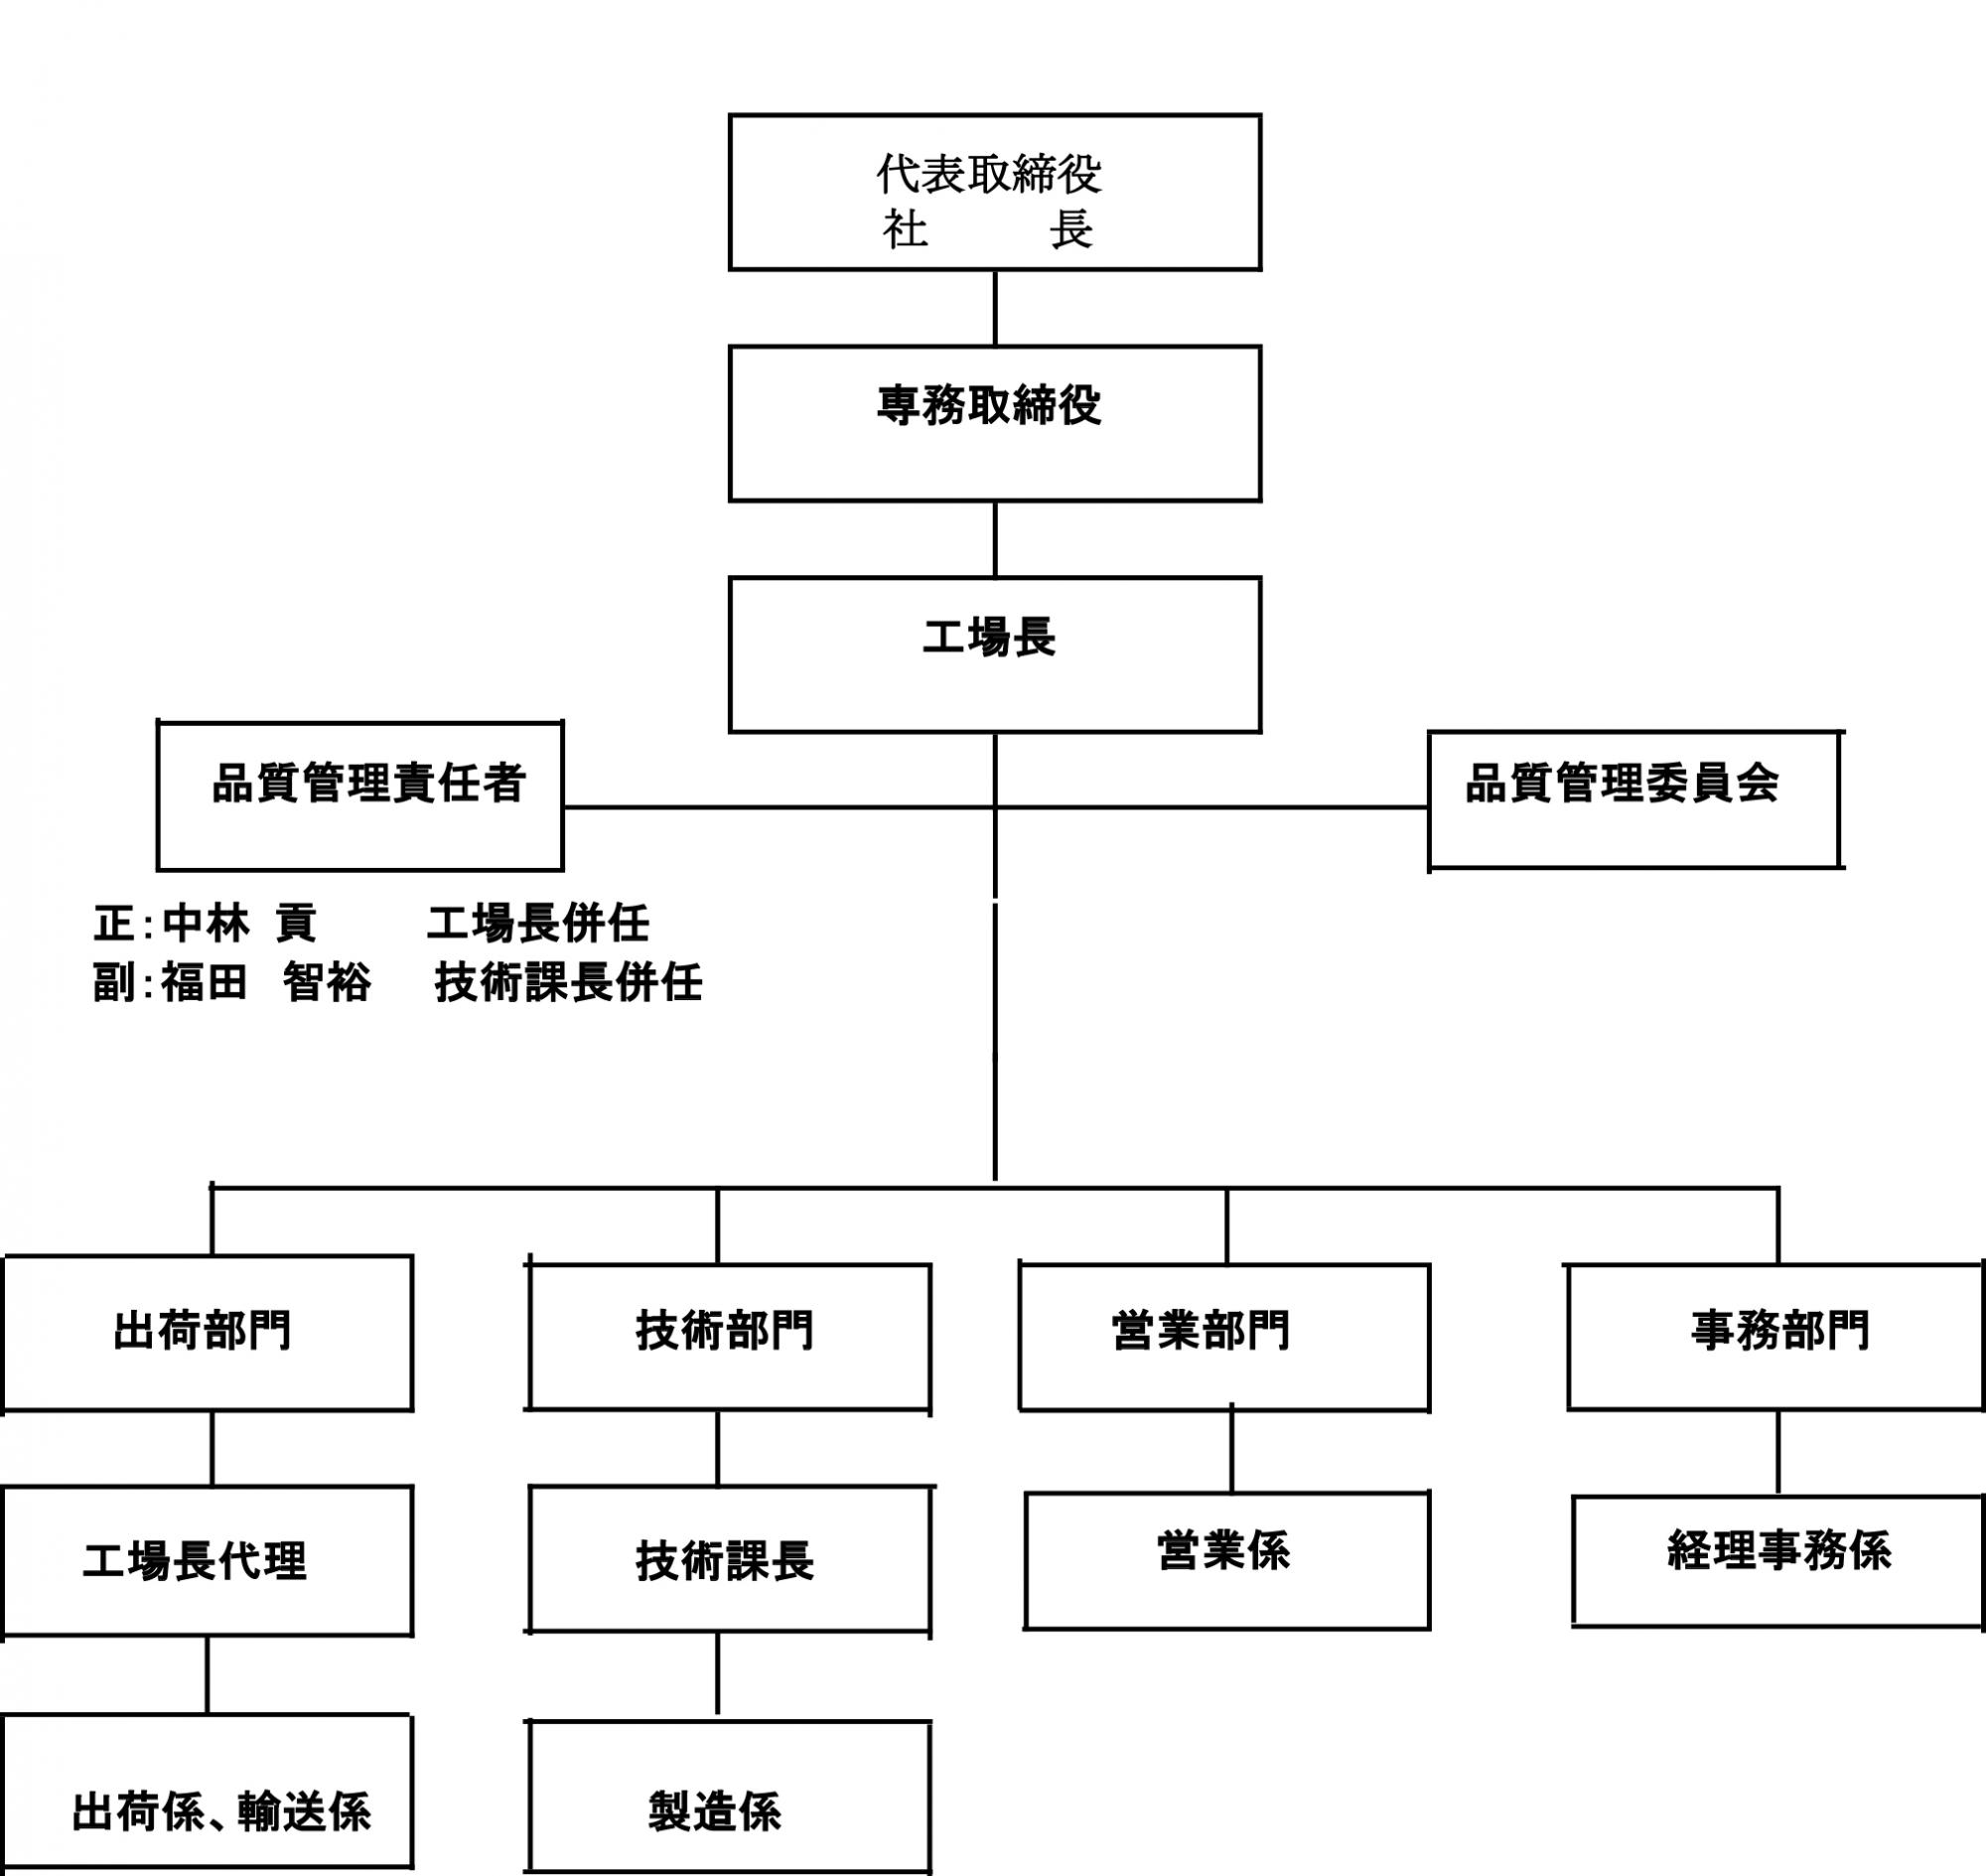 本菱光コンクリート工業(株)の組織図